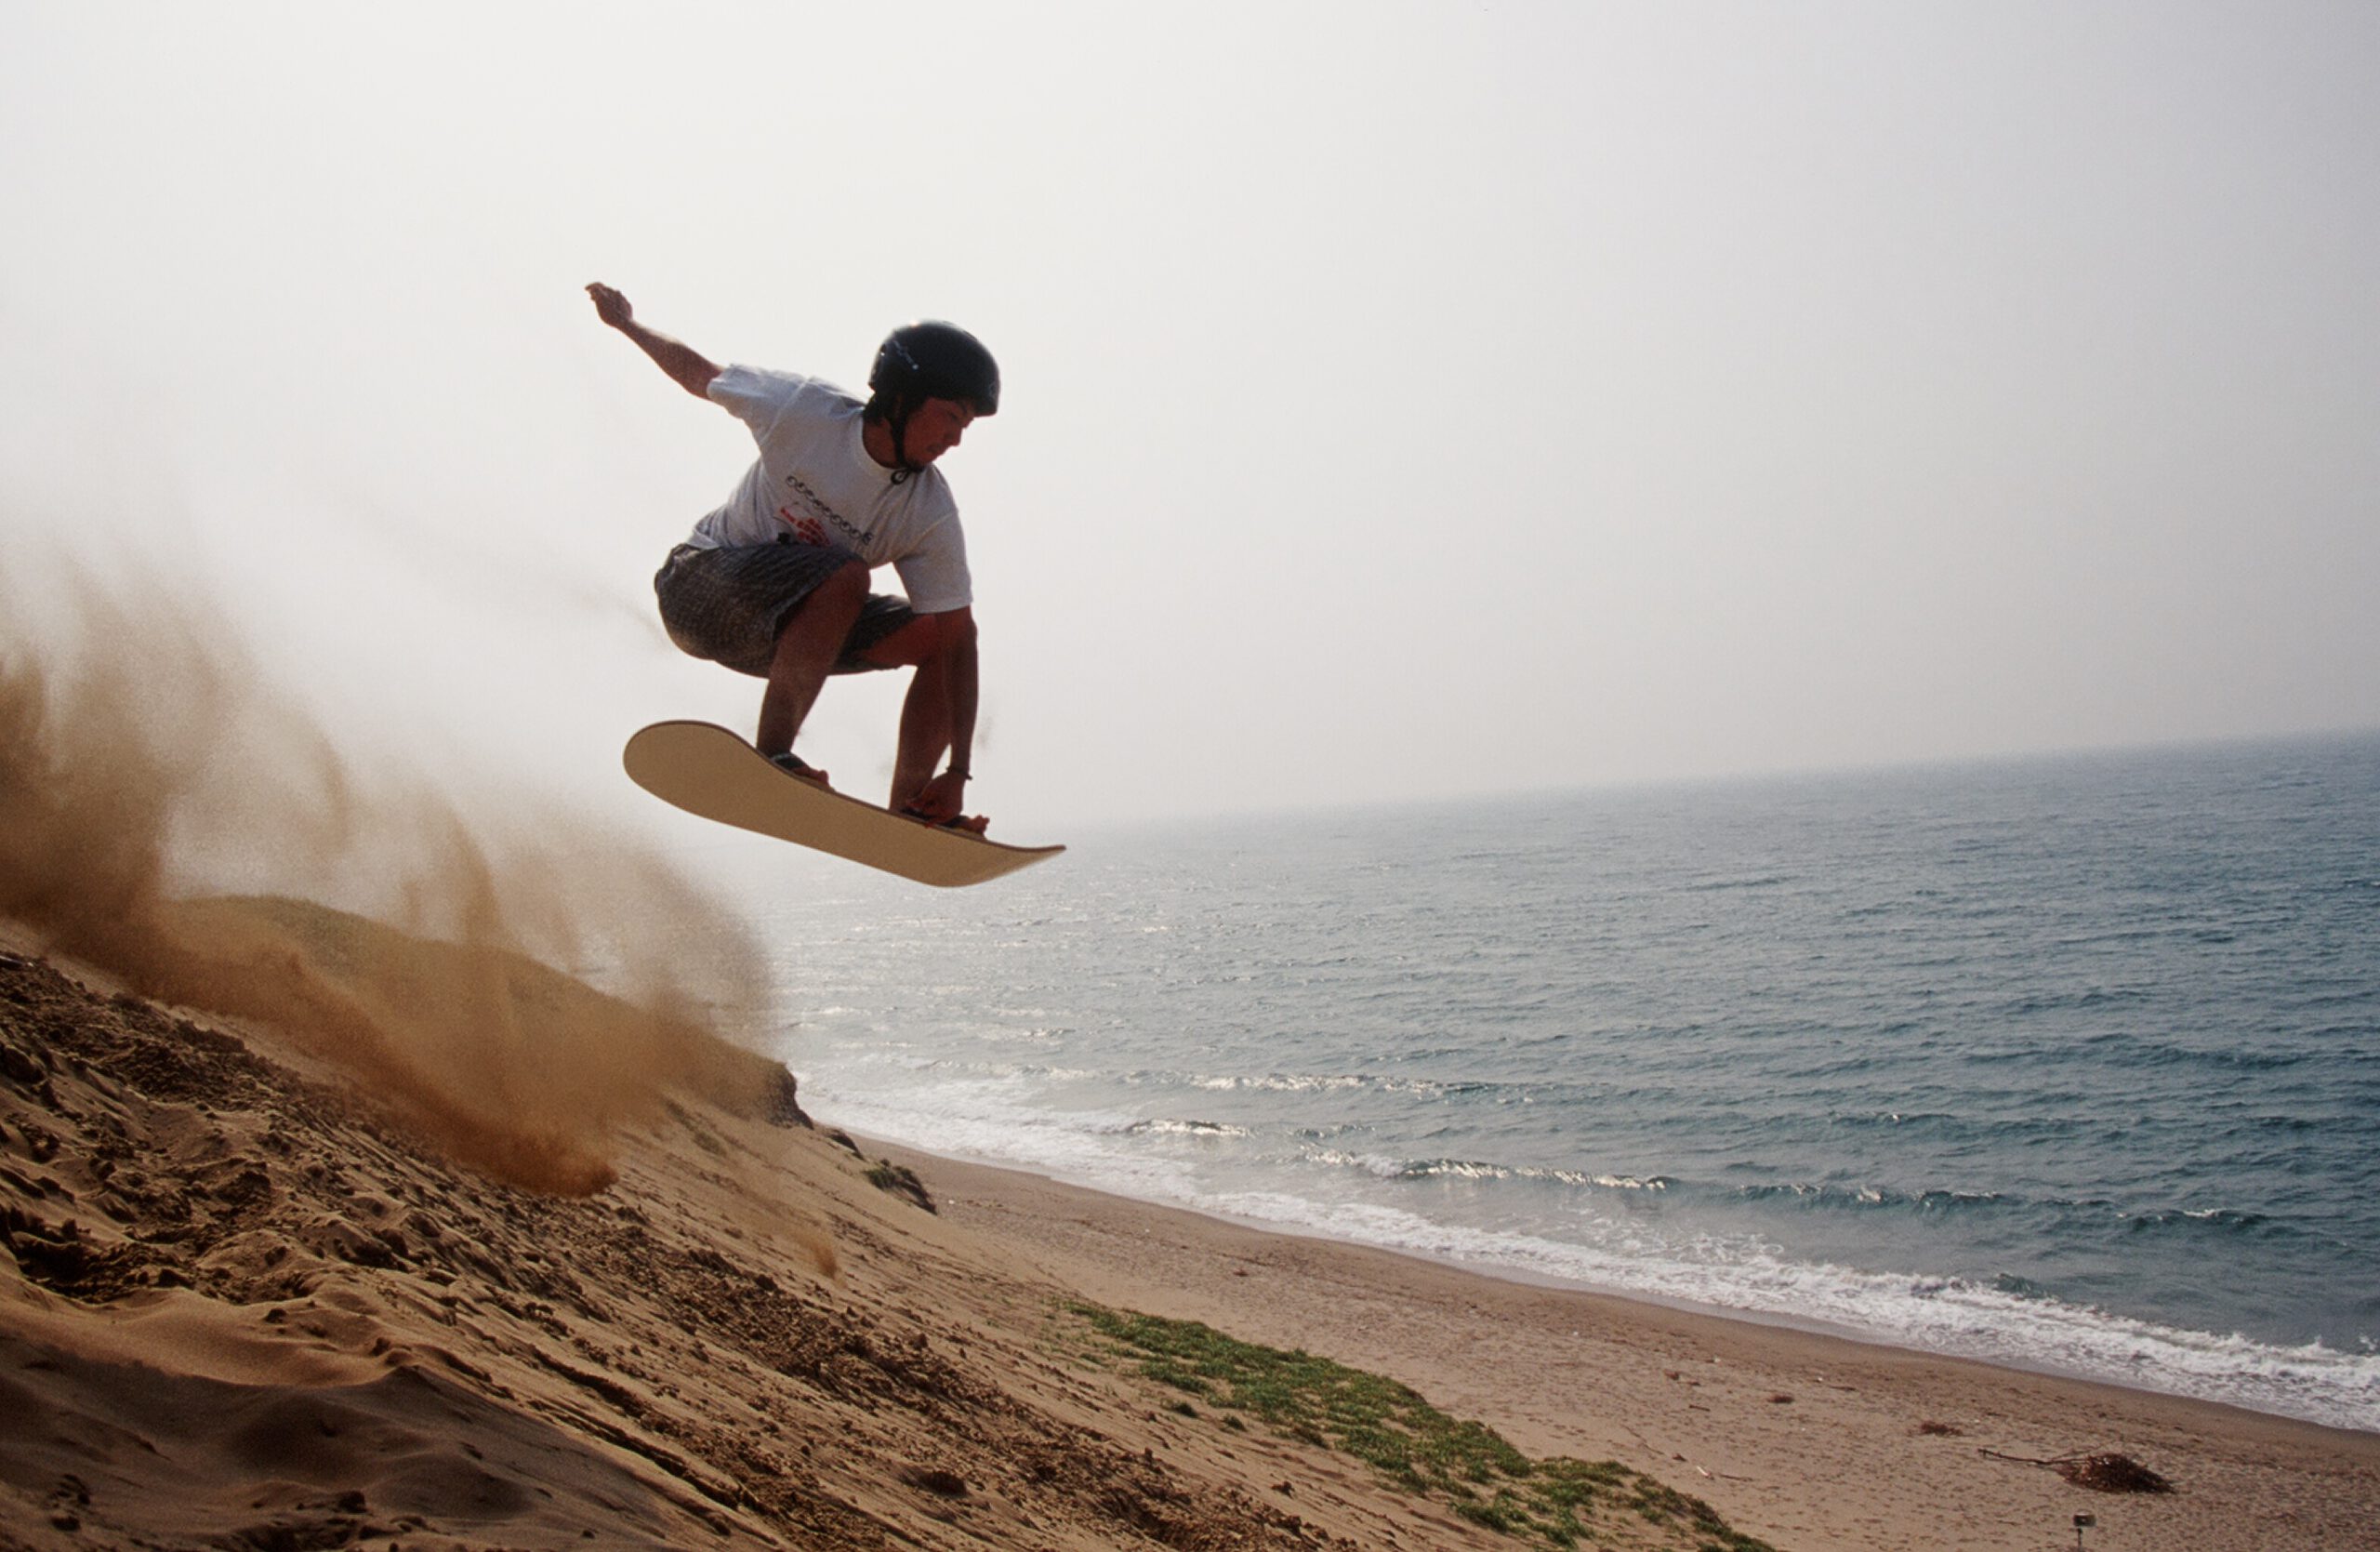 สโนว์บอร์ดทะเลทราย กิจกรรมกีฬาโต้คลื่นทะเลทรายยอดนิยมที่สุด